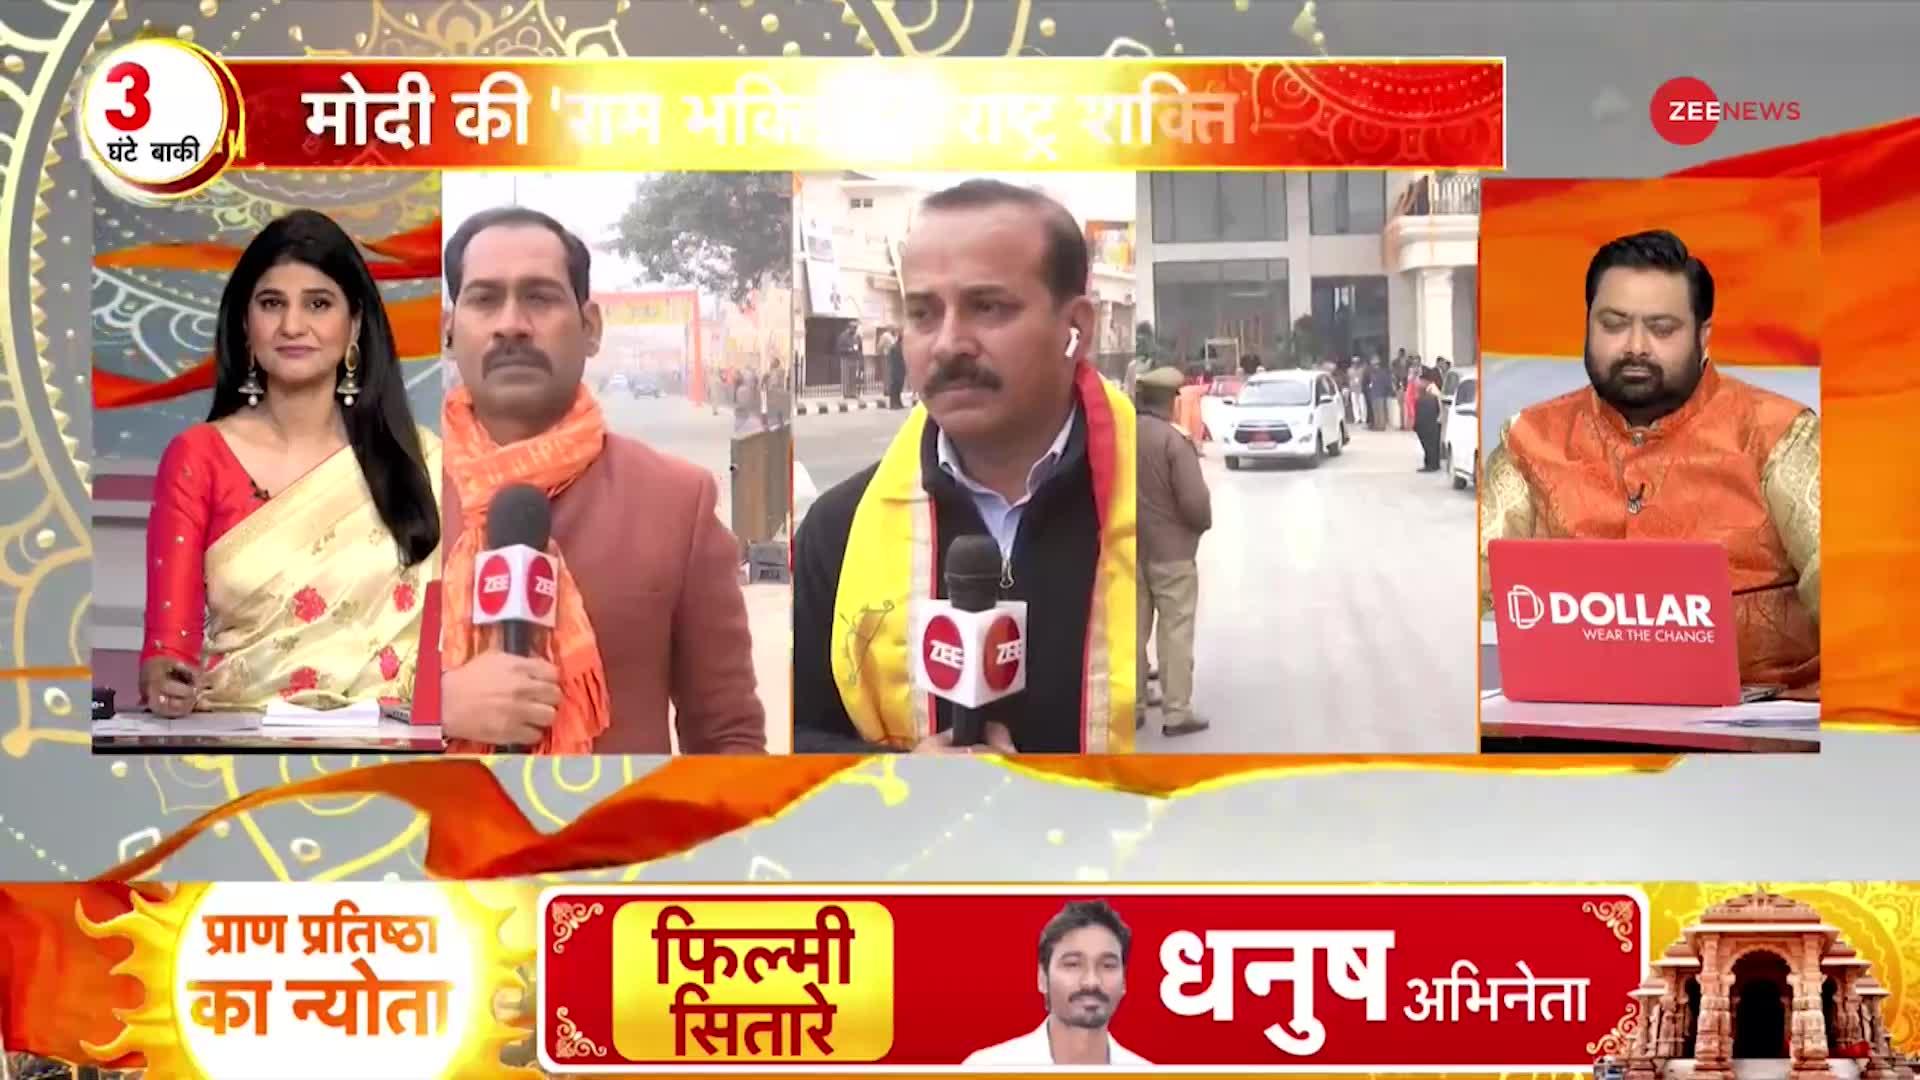 Ayodhya Ram Mandir LIVE updates: सेलिब्रिटिज़ के अयोध्या पहुंचते ही हुआ ट्रैफिक जाम